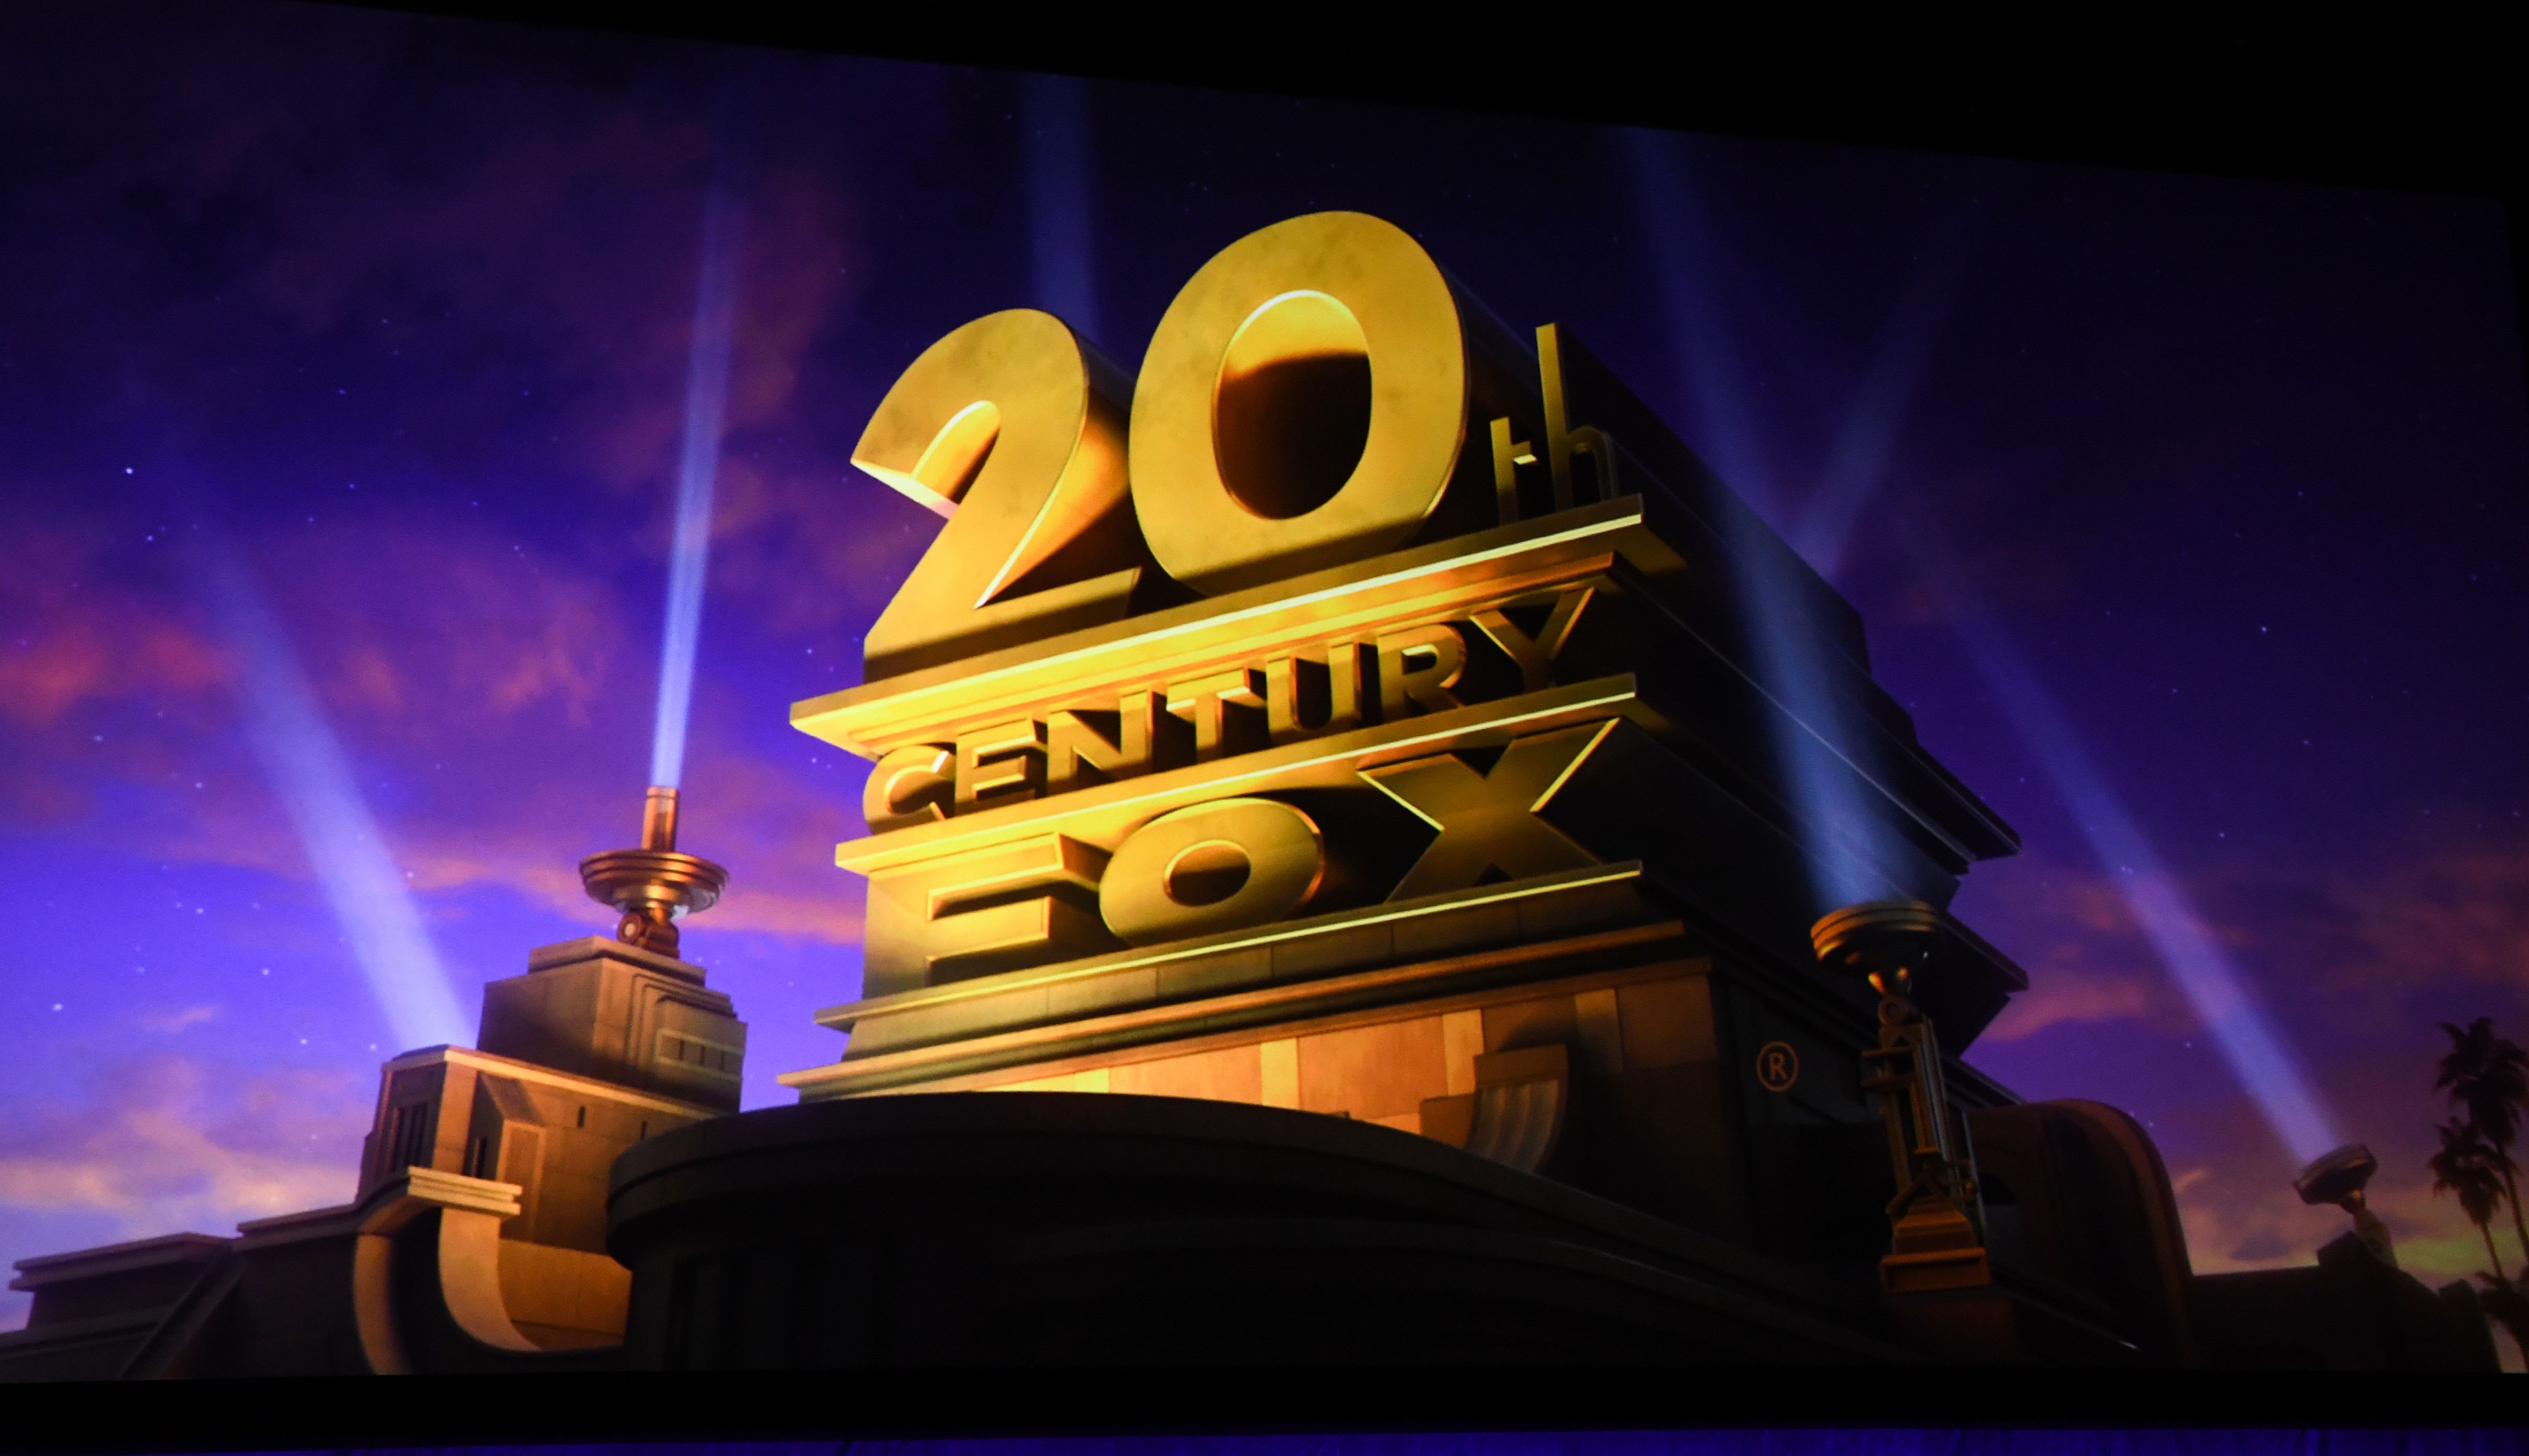 Veja como ficou o novo logo da ex-Fox, atual 20th Century Studios